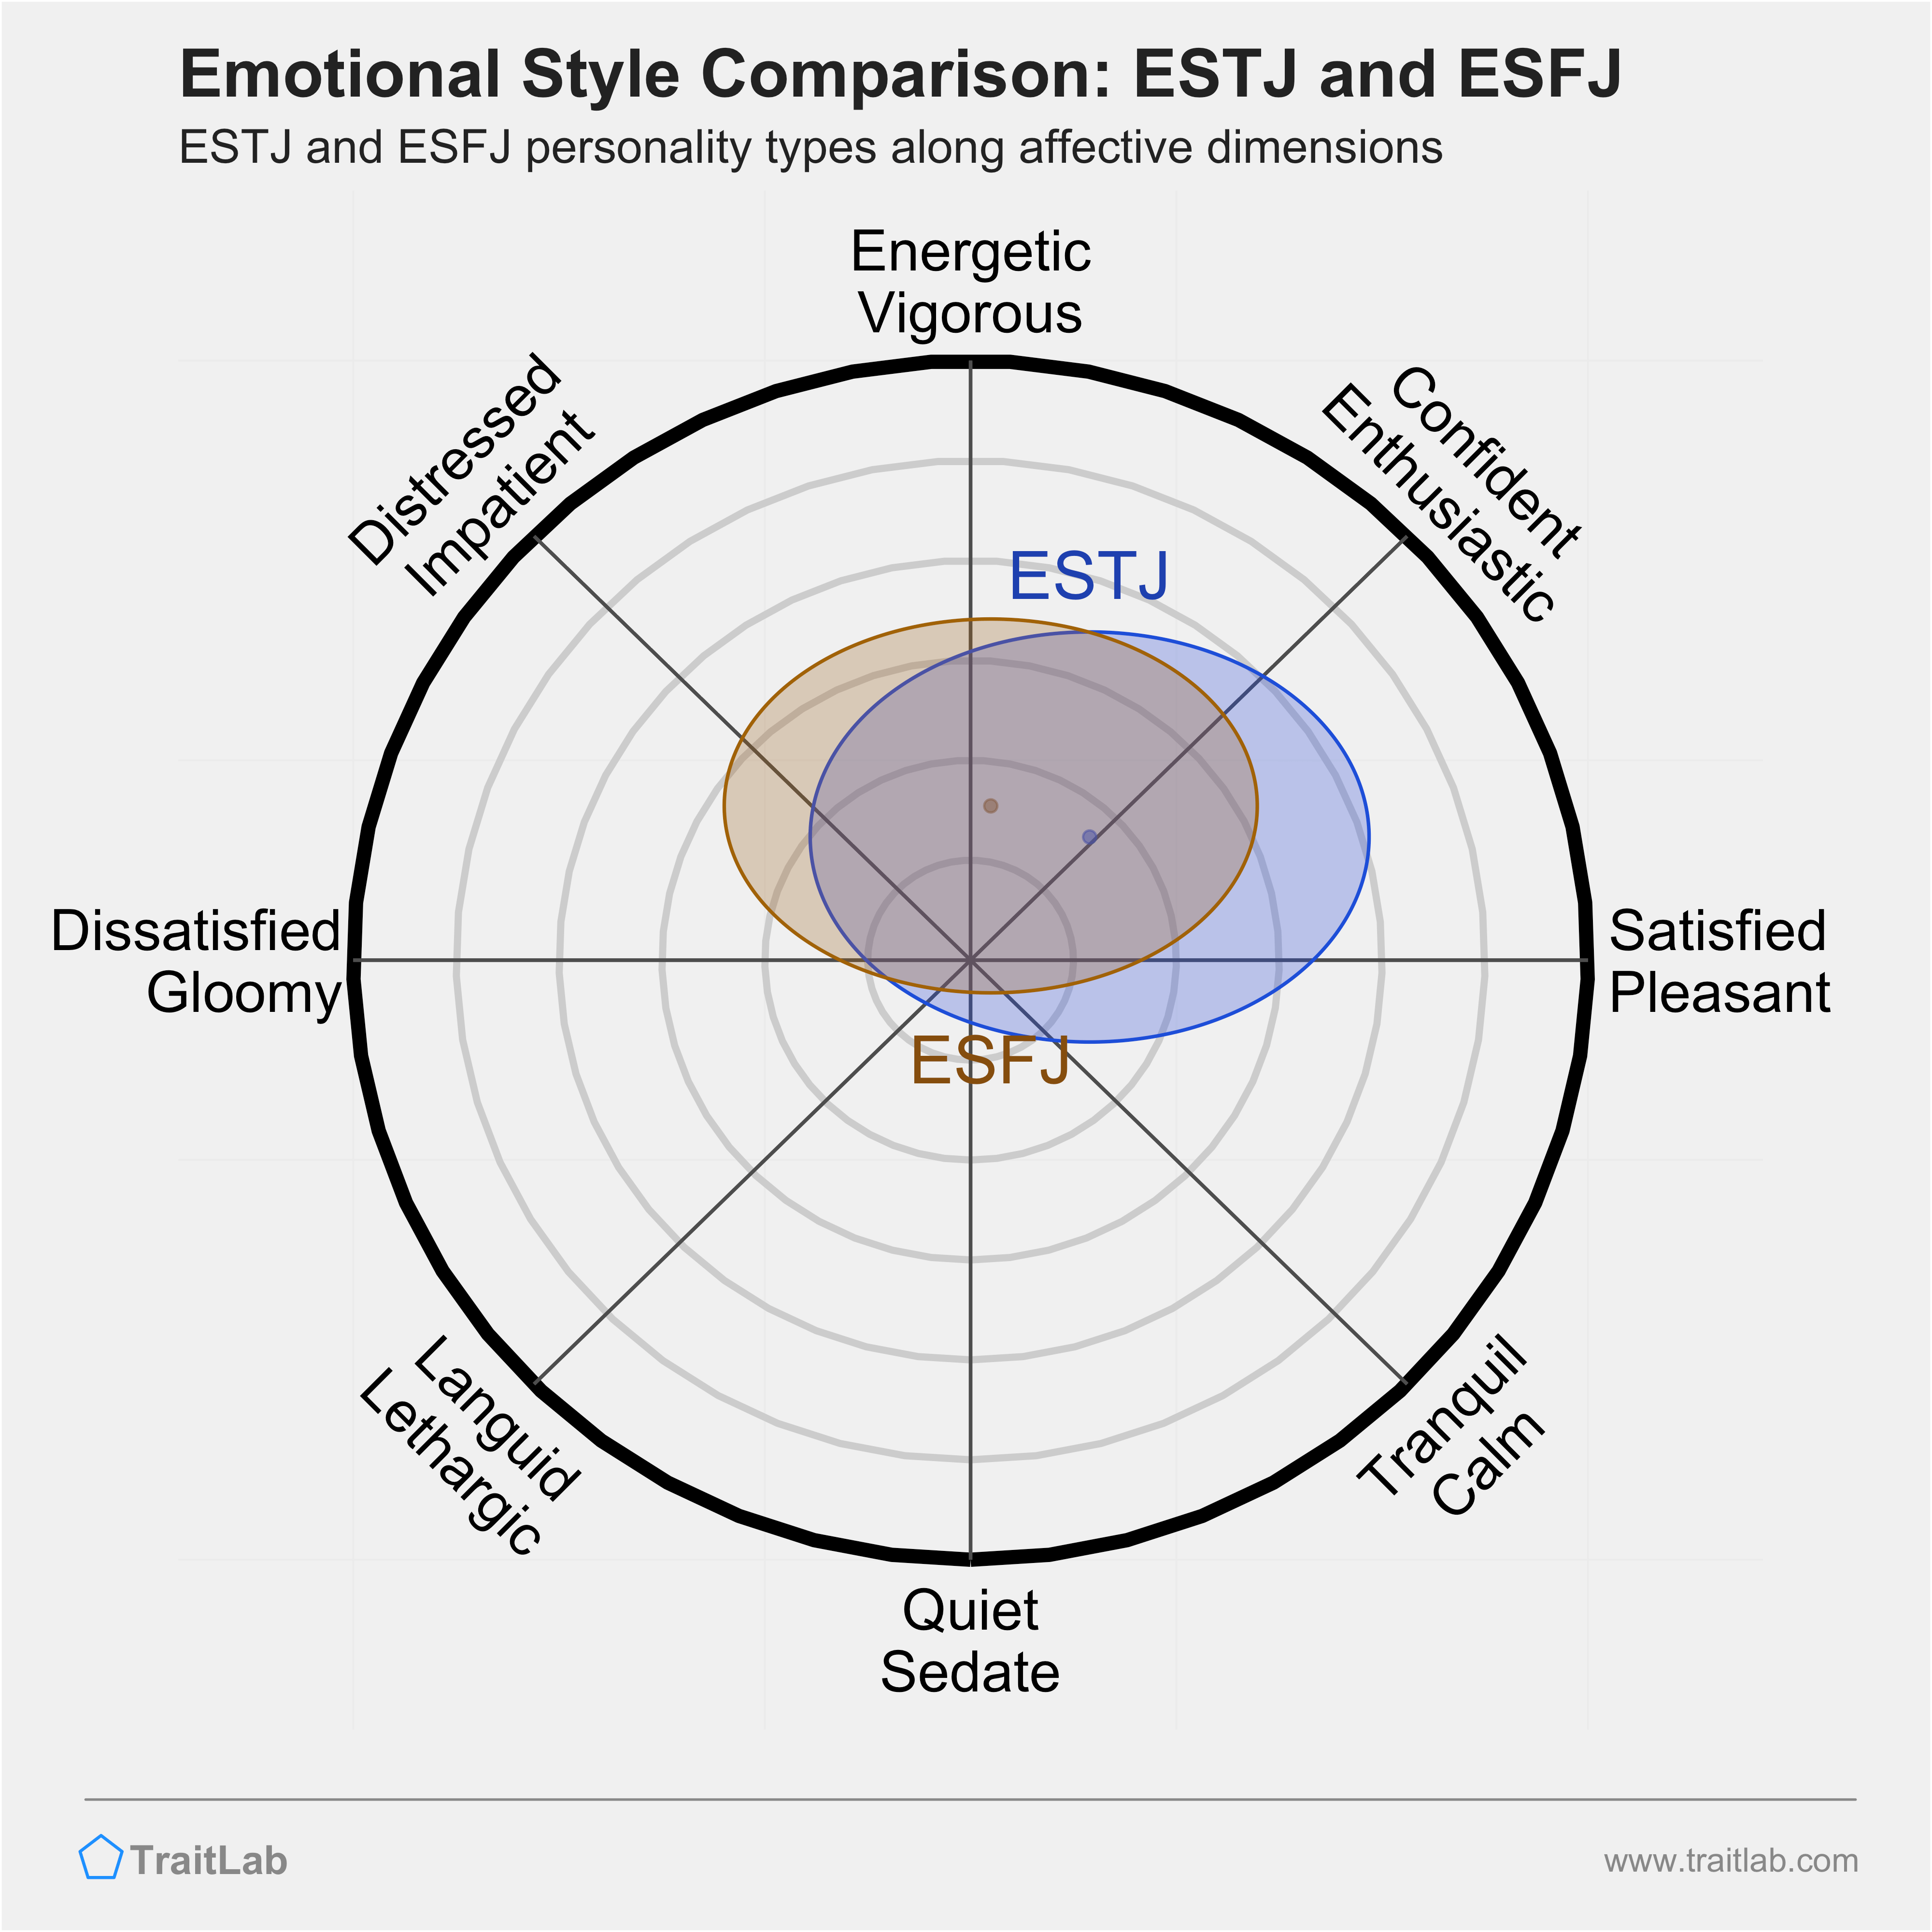 ESTJ and ESFJ comparison across emotional (affective) dimensions